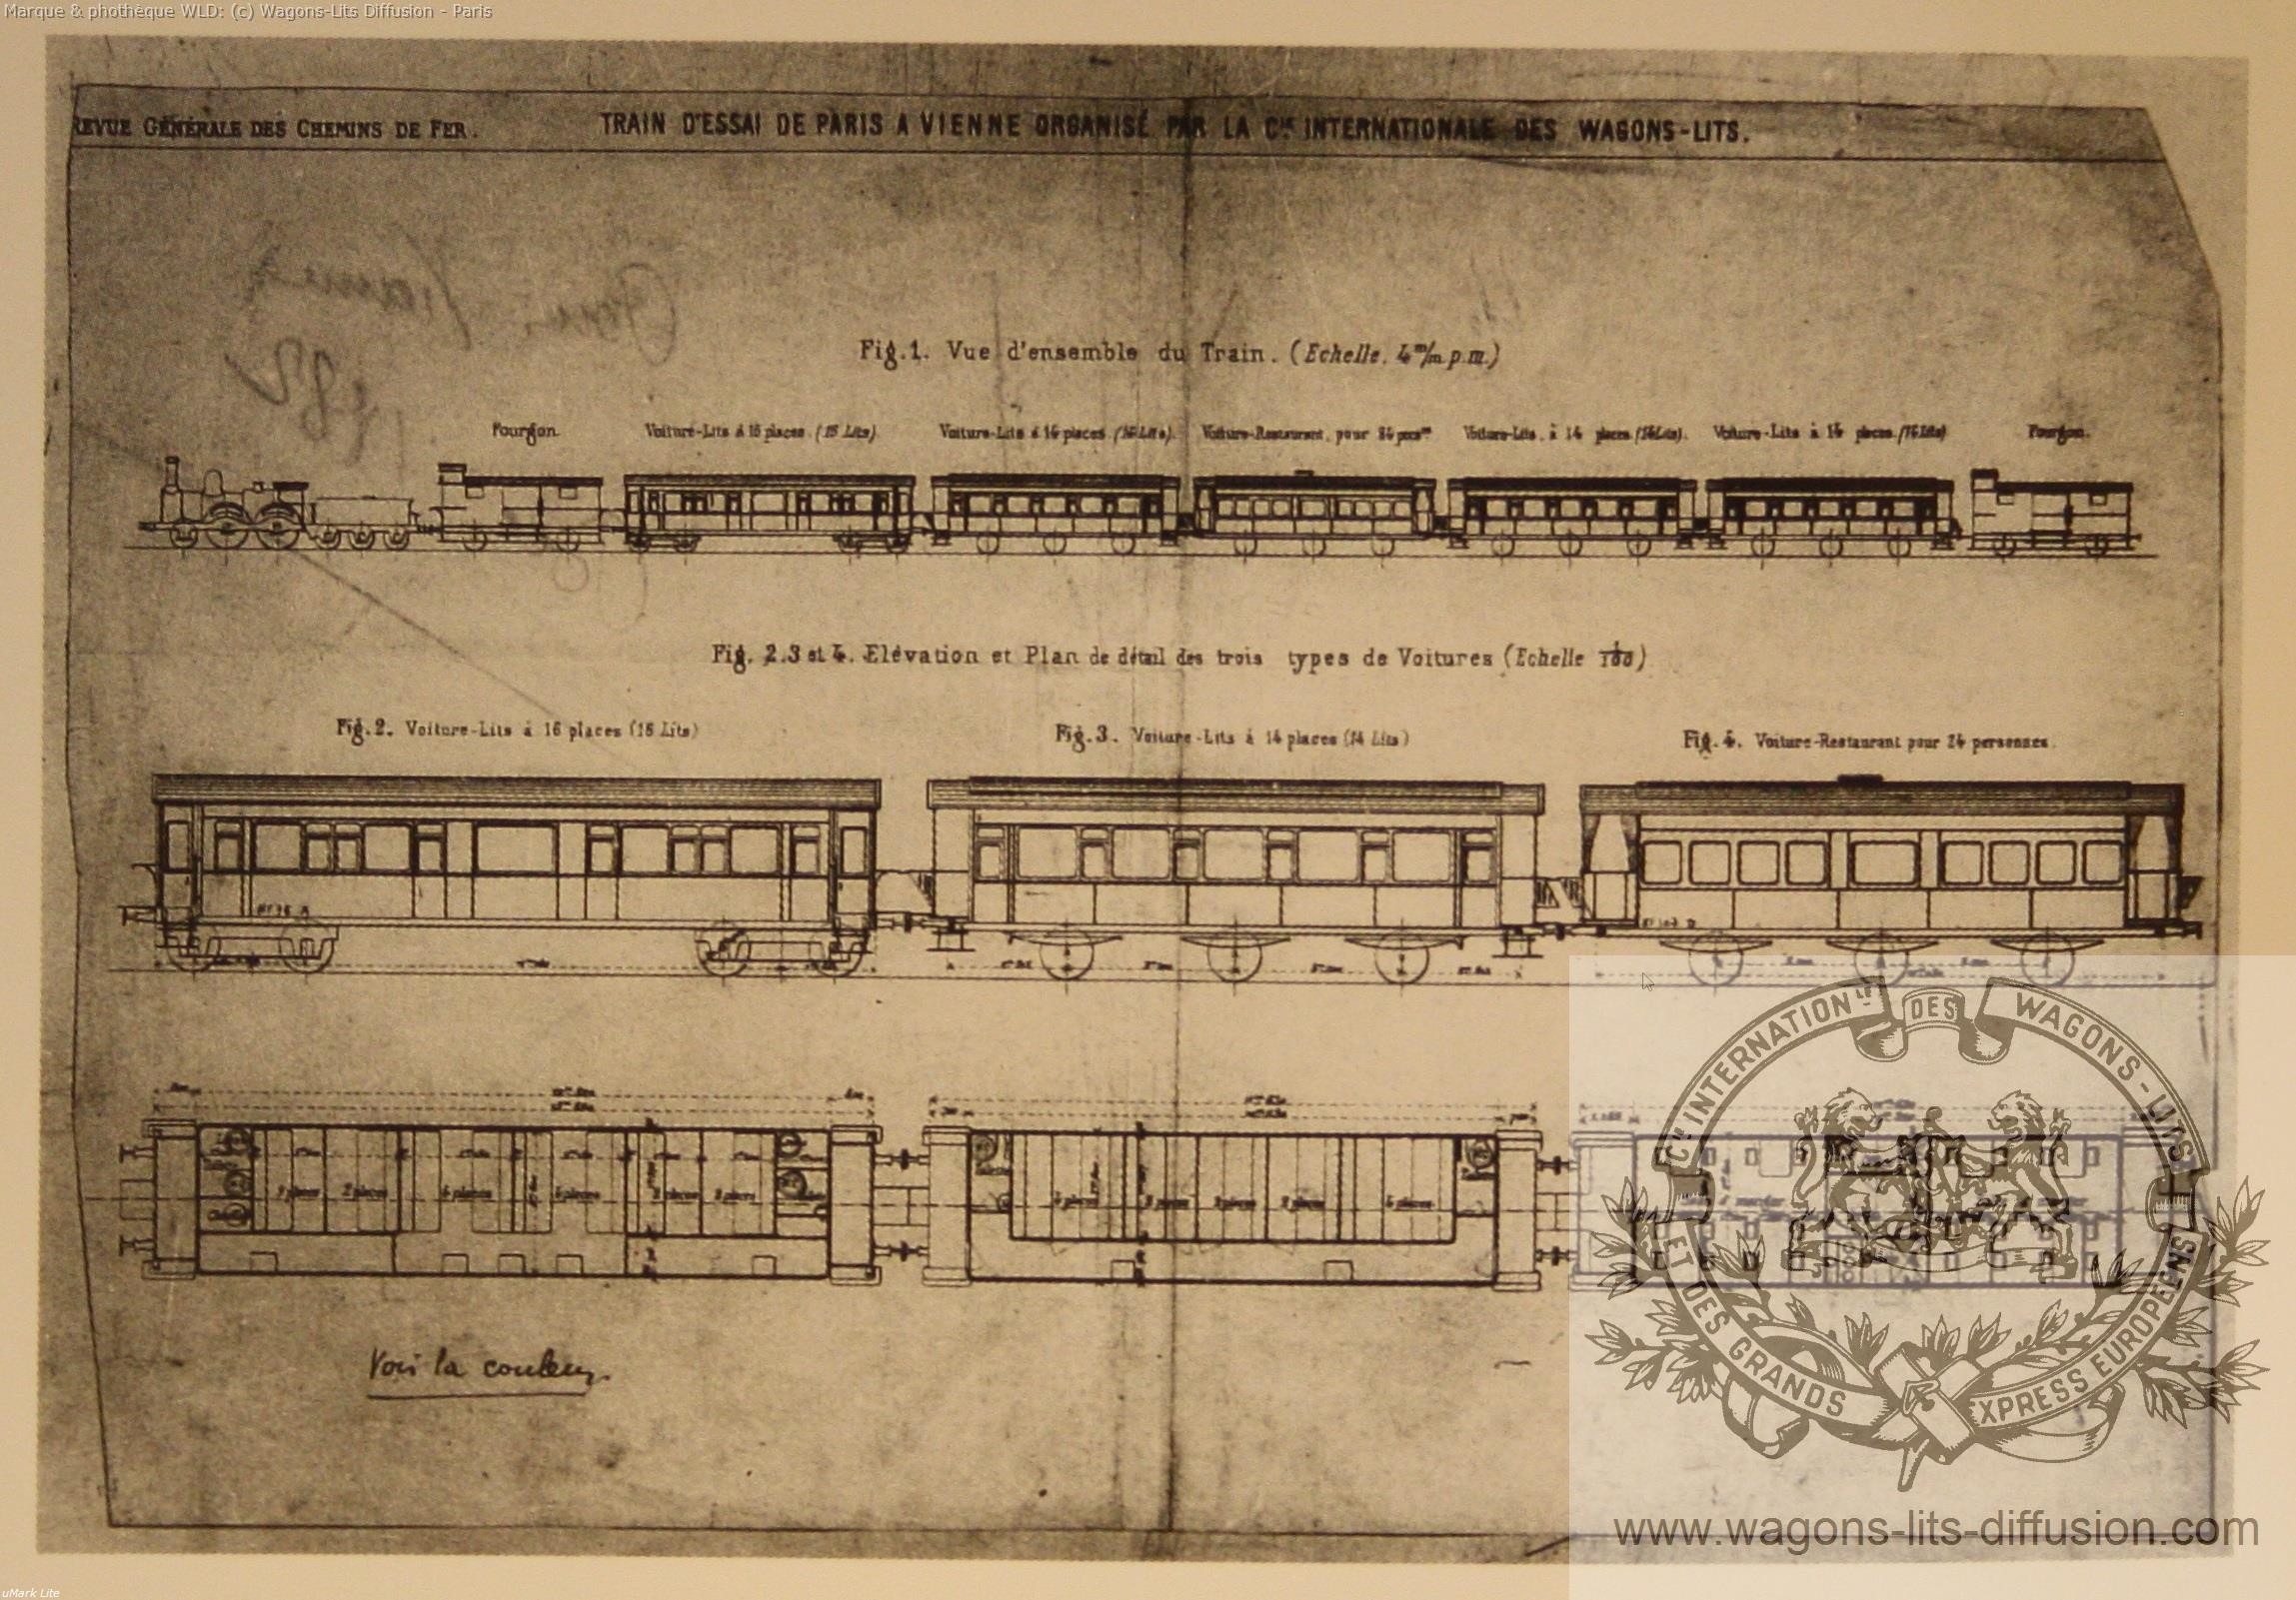 Wl composition du train d essai futur orient express en1882